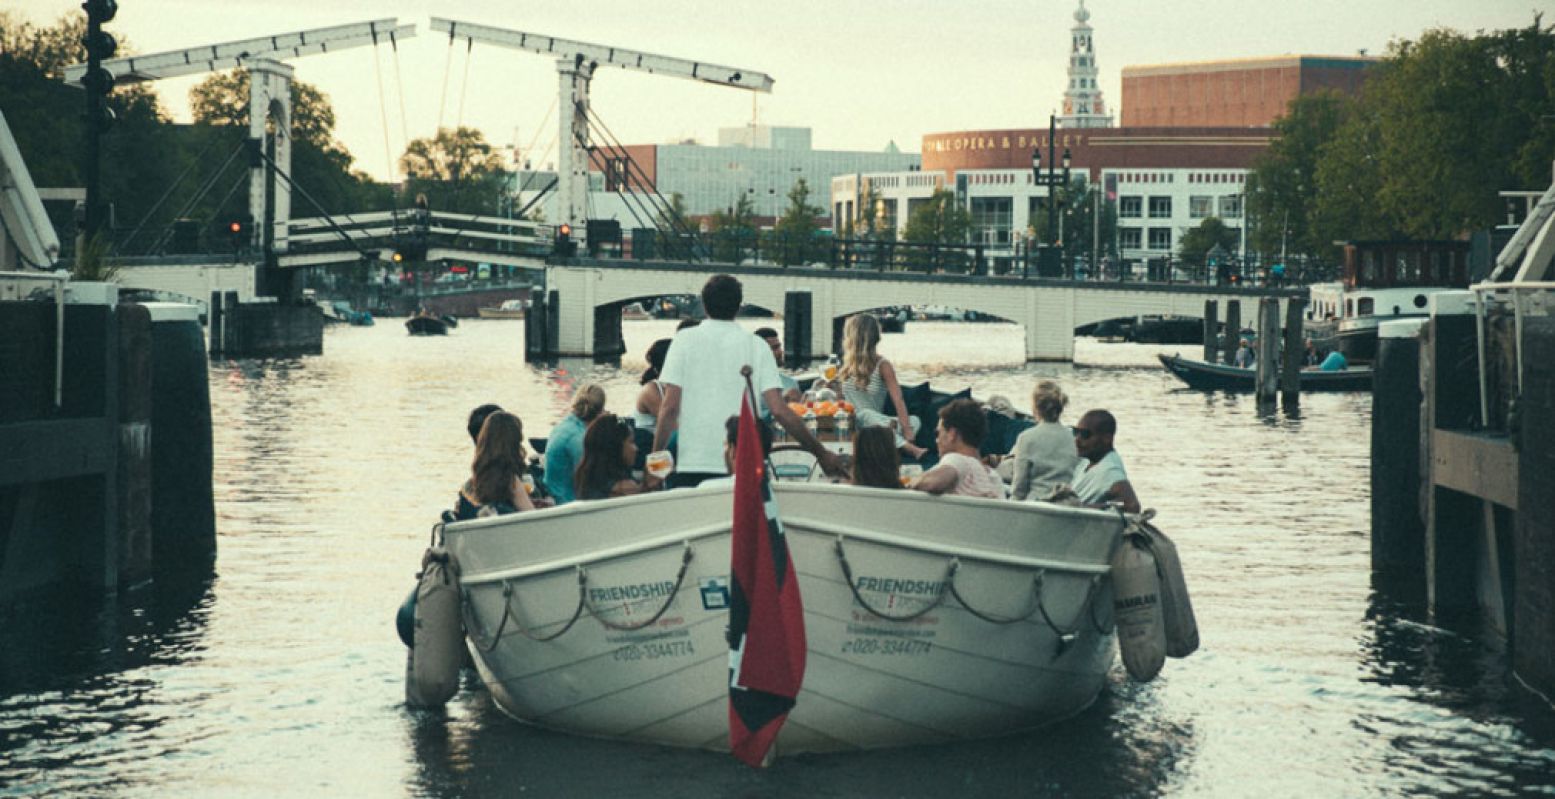 Stap in een sloep met je vrienden en vaar door onze romantische hoofdstad. Foto: Friendship Amsterdam